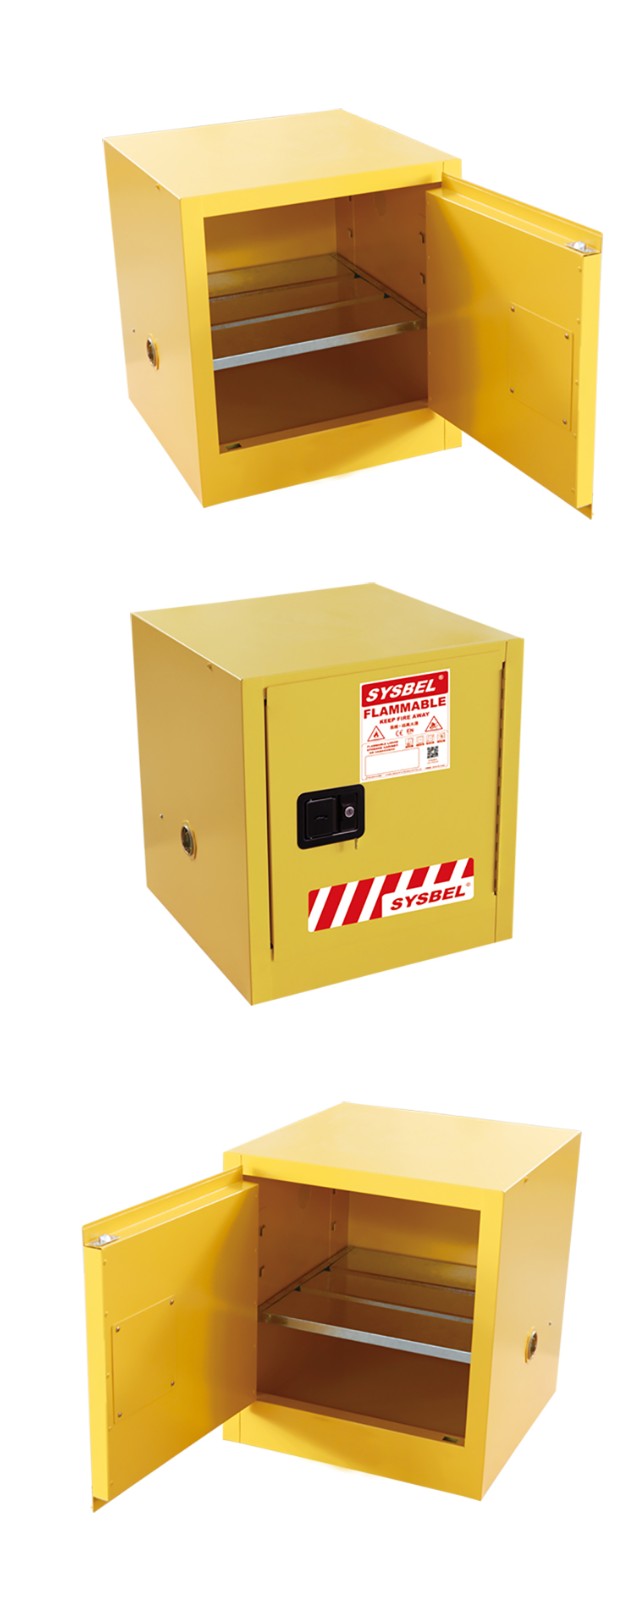 SYSBEL/西斯贝尔 WA810100 易燃液体防火安全柜/化学品安全柜(10Gal/38L)